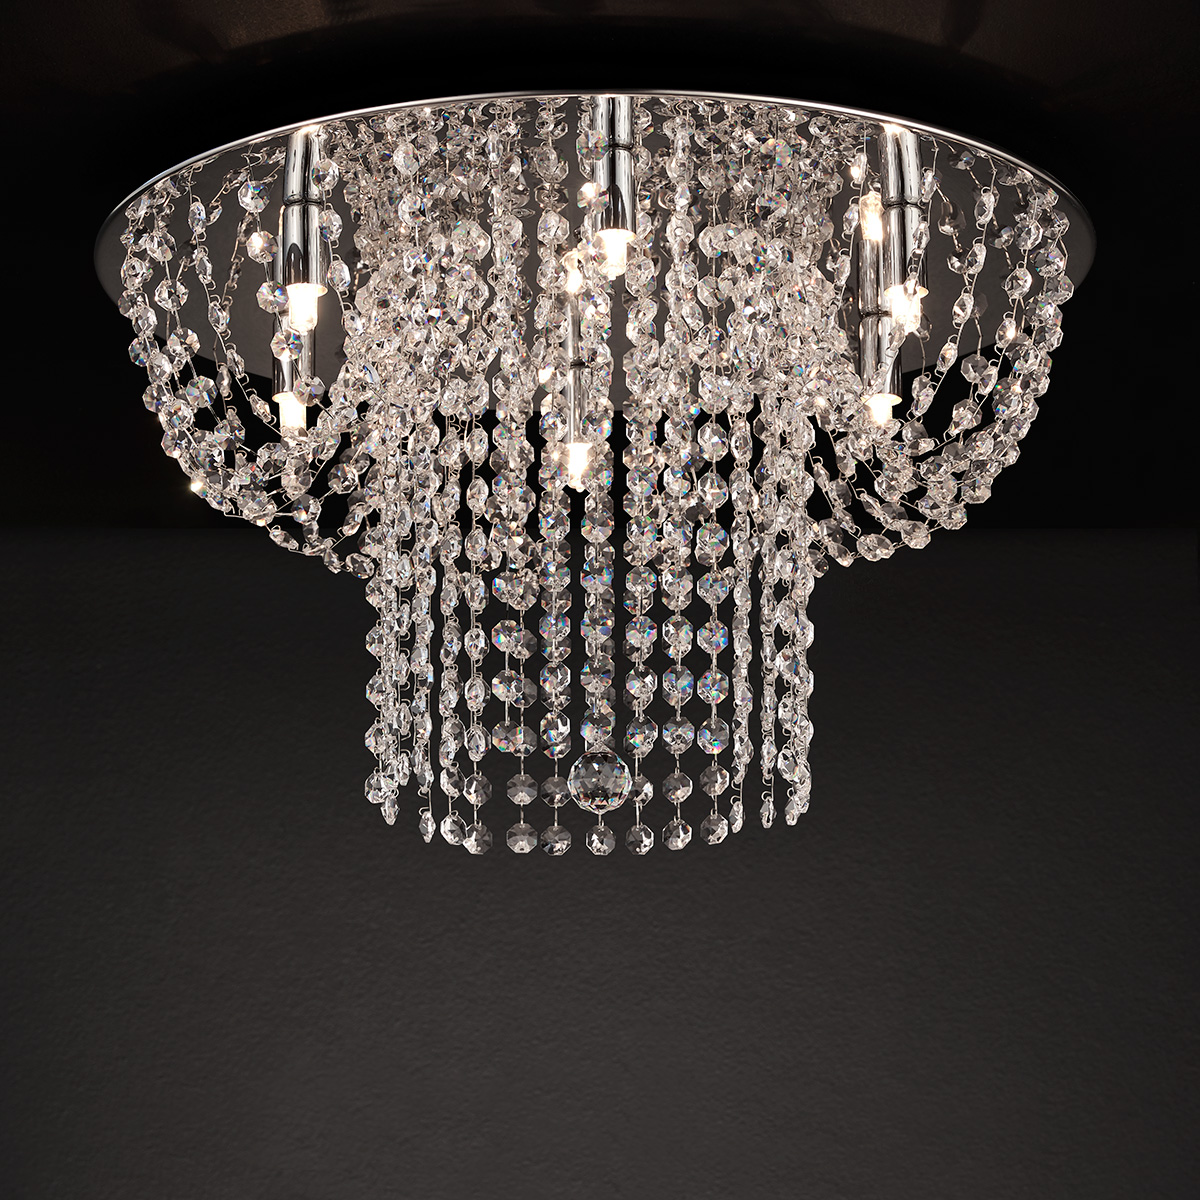 Φωτιστικό οροφής με κρύσταλλα ΕΡΜΗΣ modern ceiling lamp with crystal accents